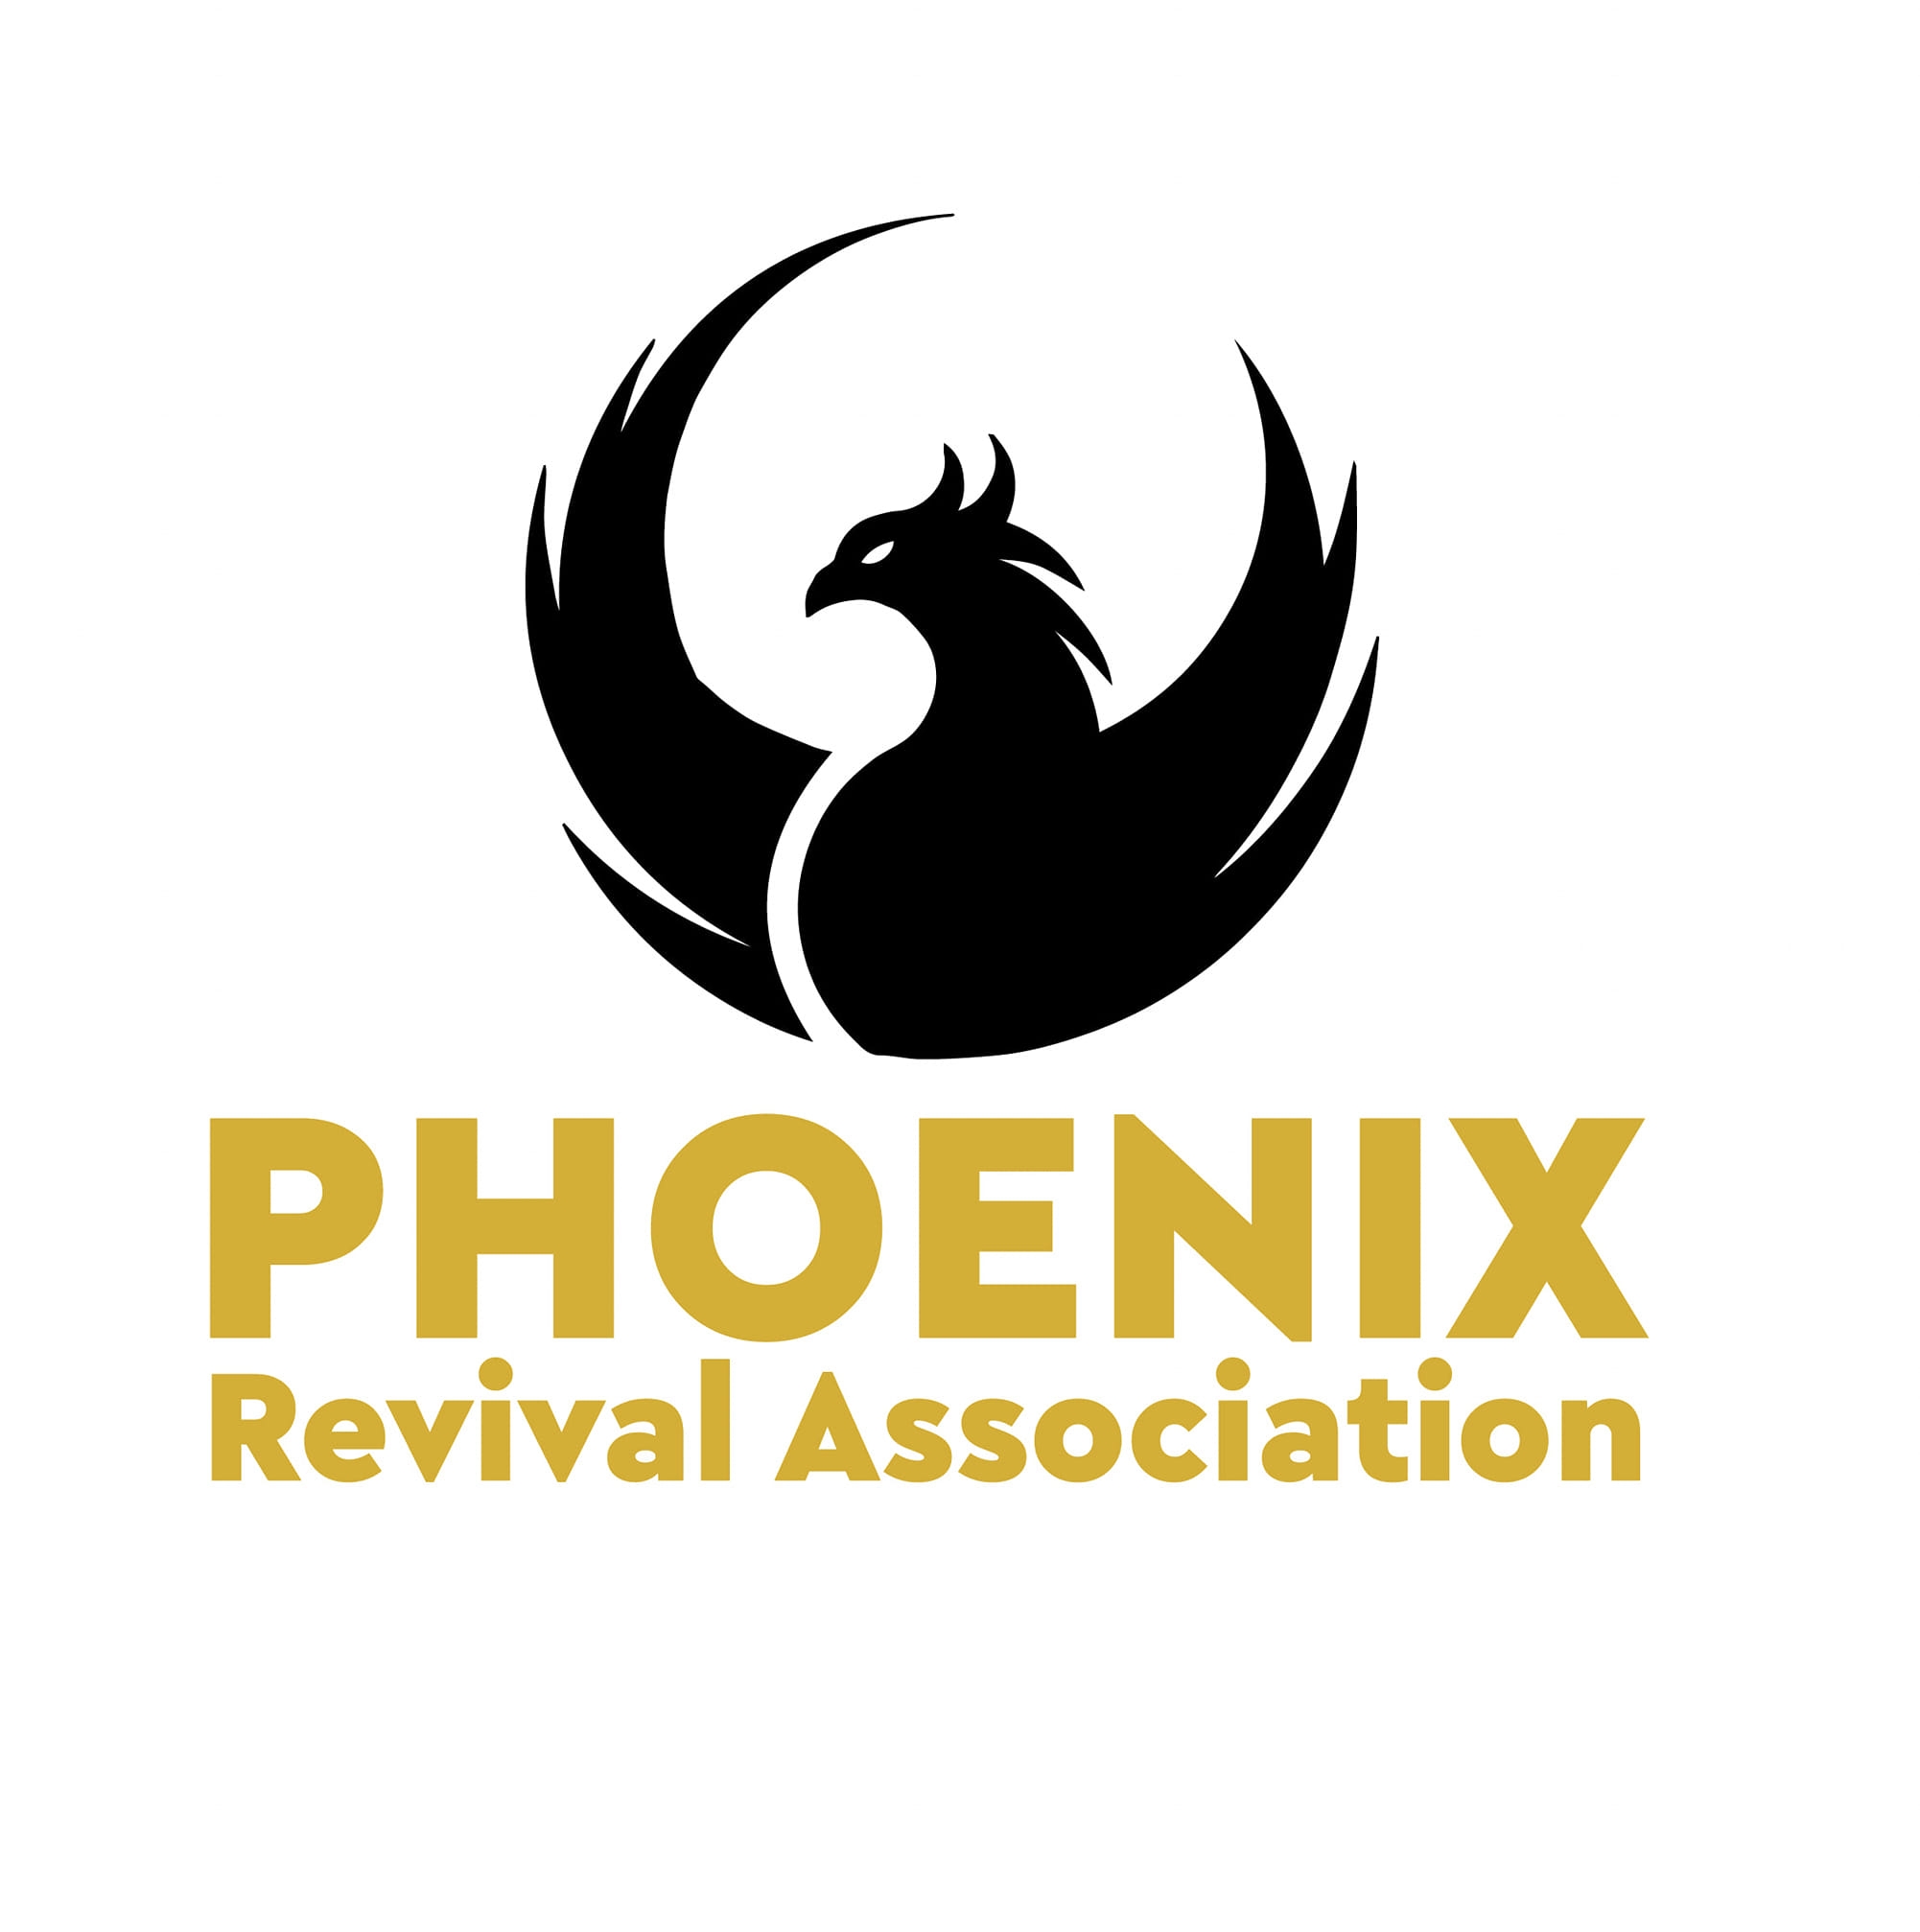 Phoenix Revival Association